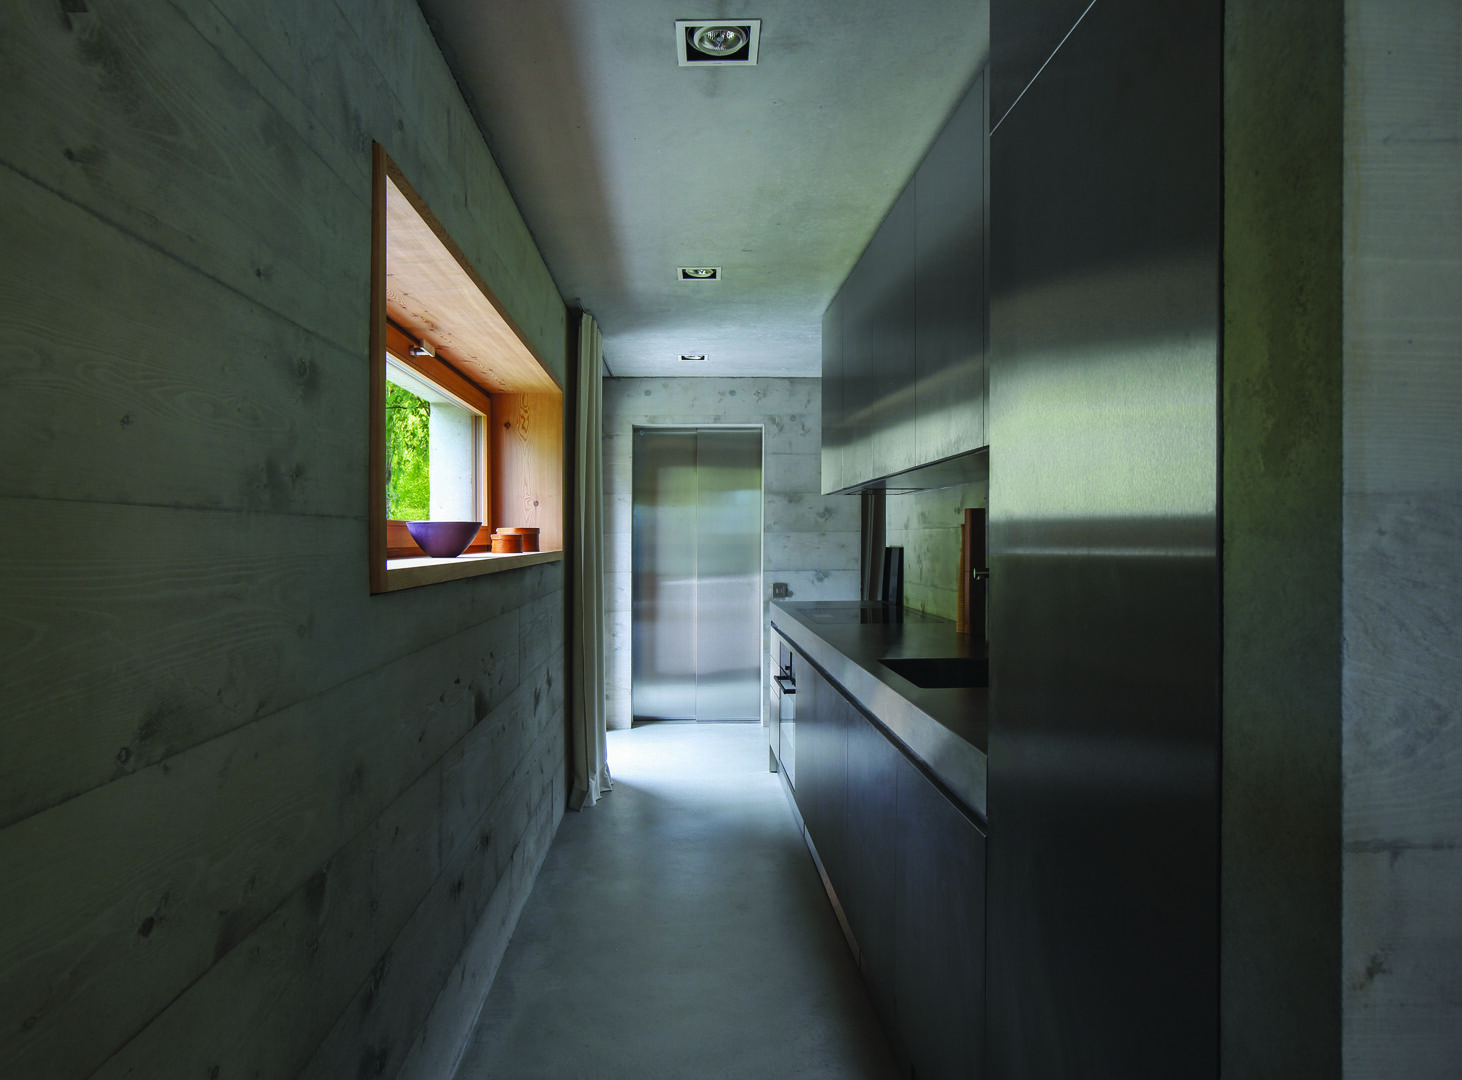 Strato_design_Non Plus Ultra_bespoke kitchen project in Val Bregaglia_Architektur Bureau Ruch_mat stainless steel_15a_ph Simonetti